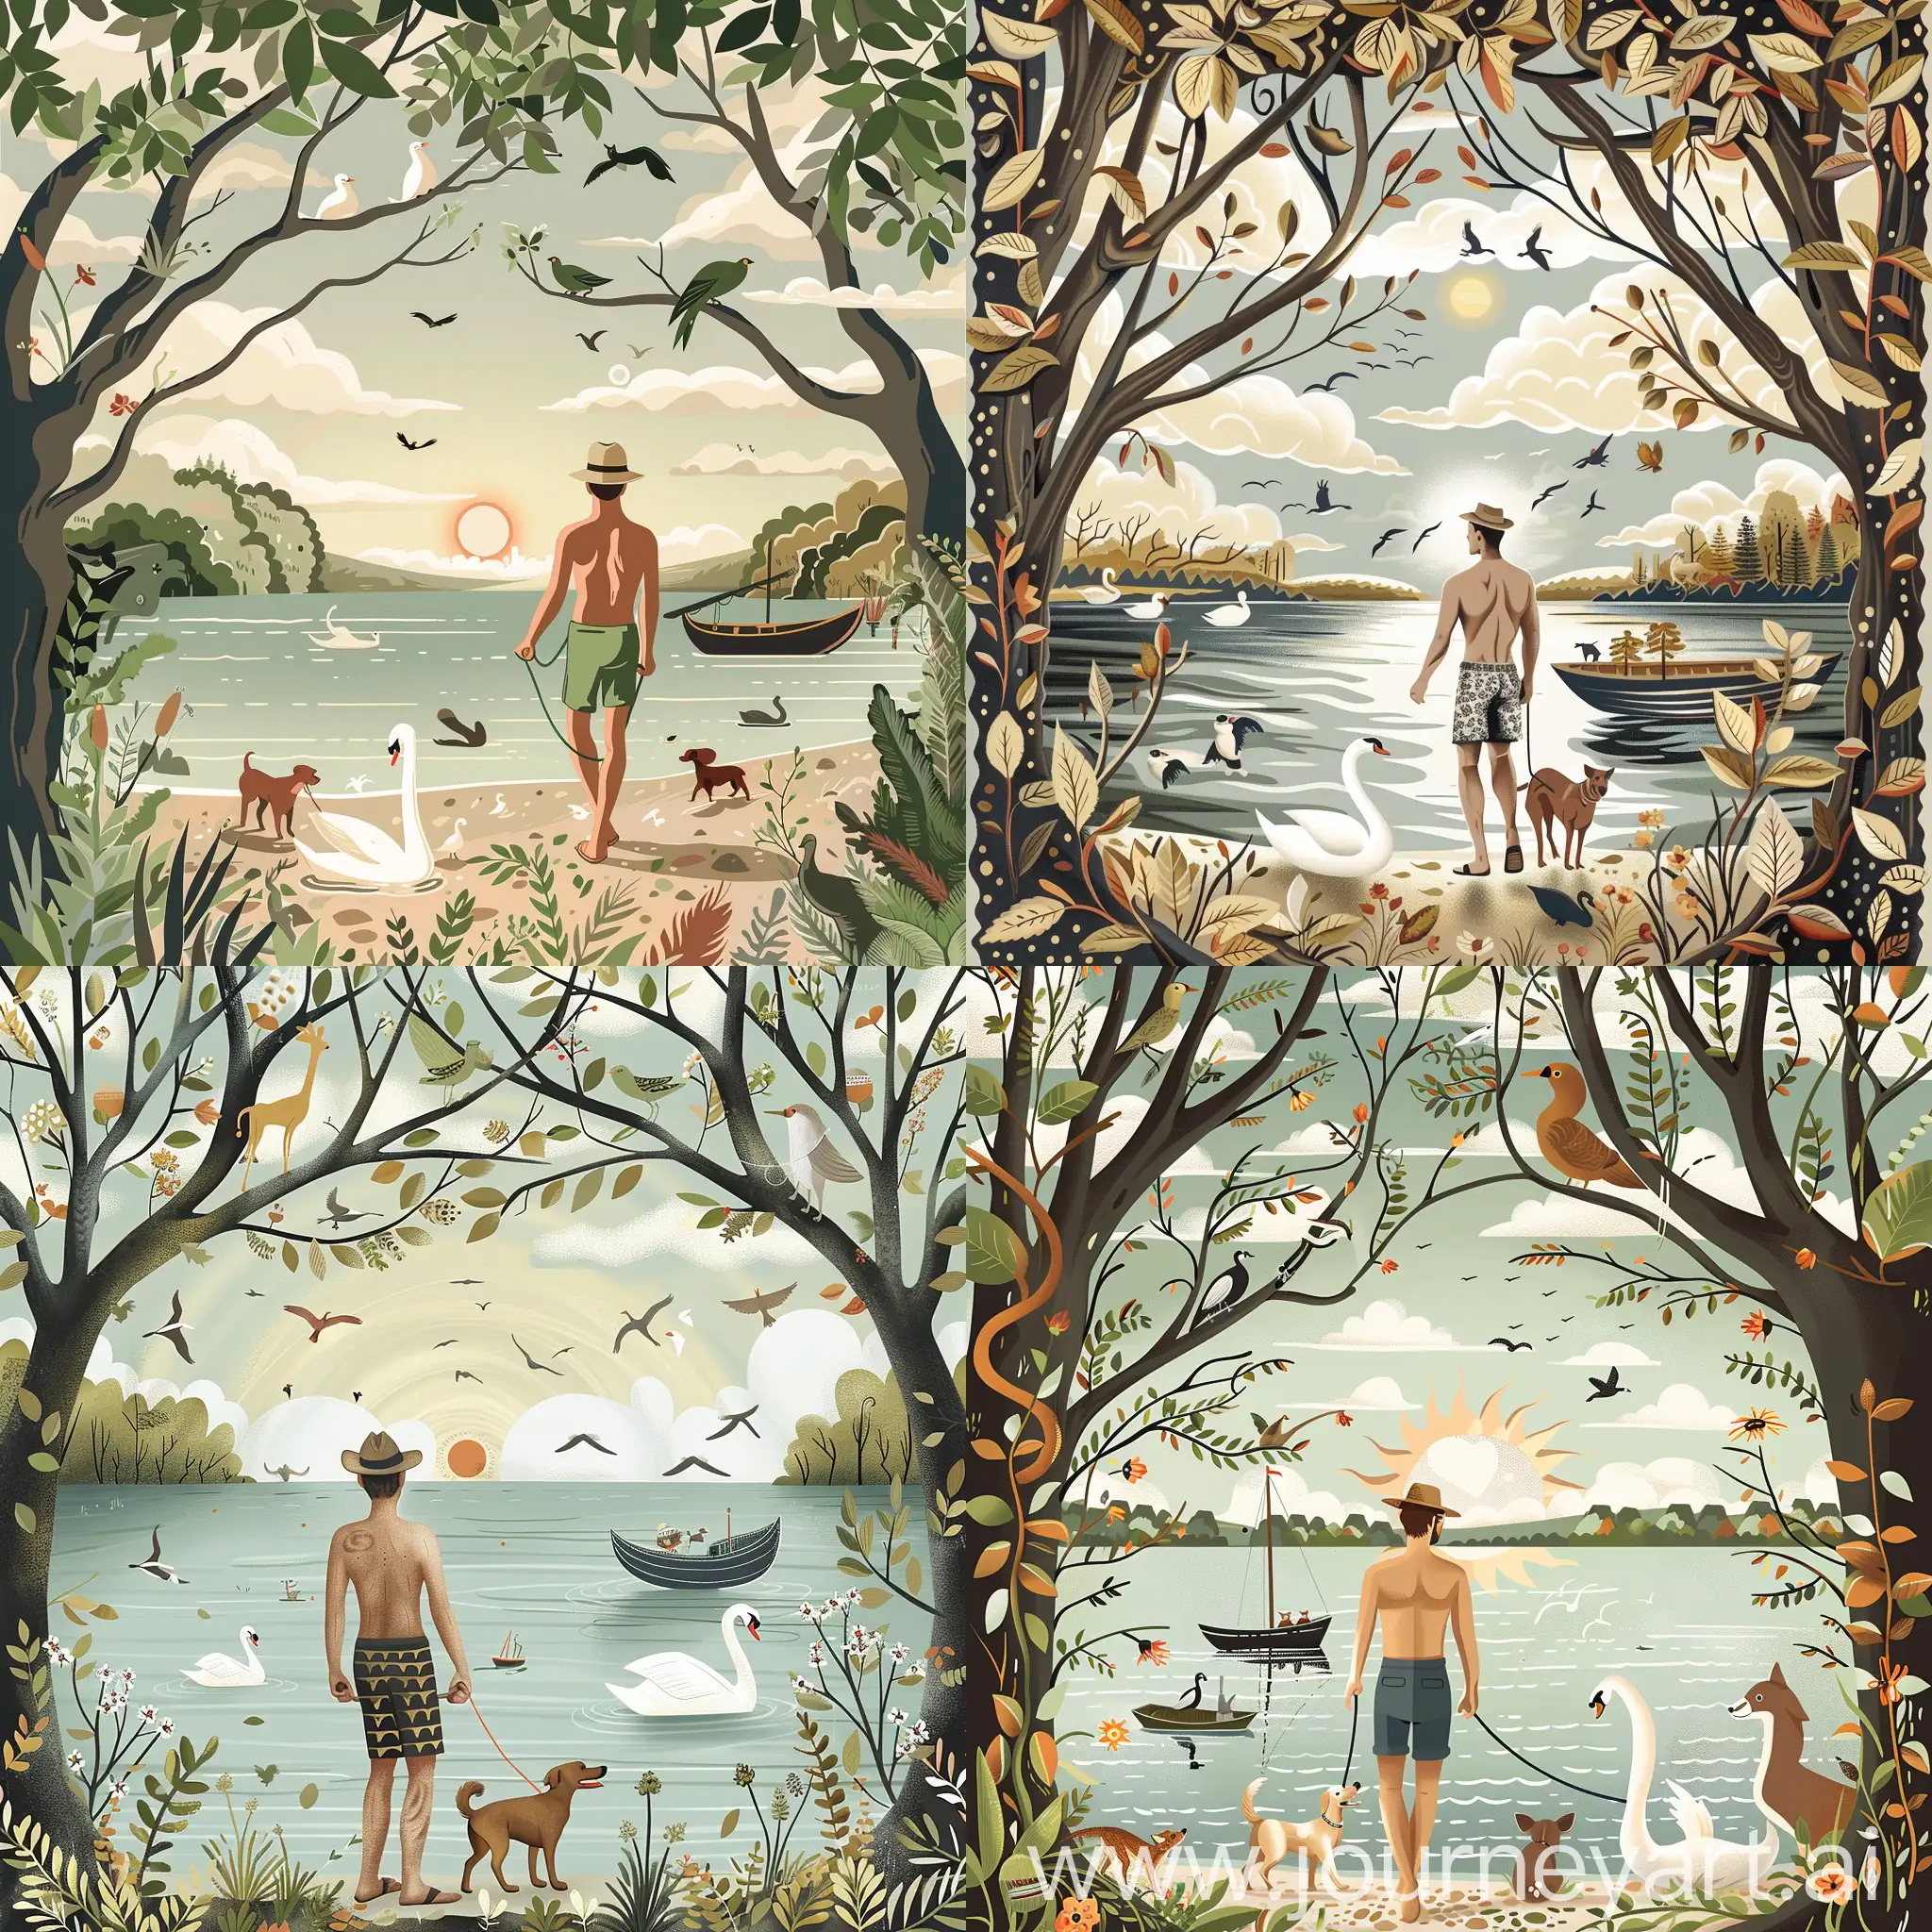 hombre sin sombrero pantalon corto paseando perro a orillass de lago con bote y cisne, rodeado de bosque con animales asomando entre los arboles, cielo con nubes y pajaros volando, sol entre las ramas